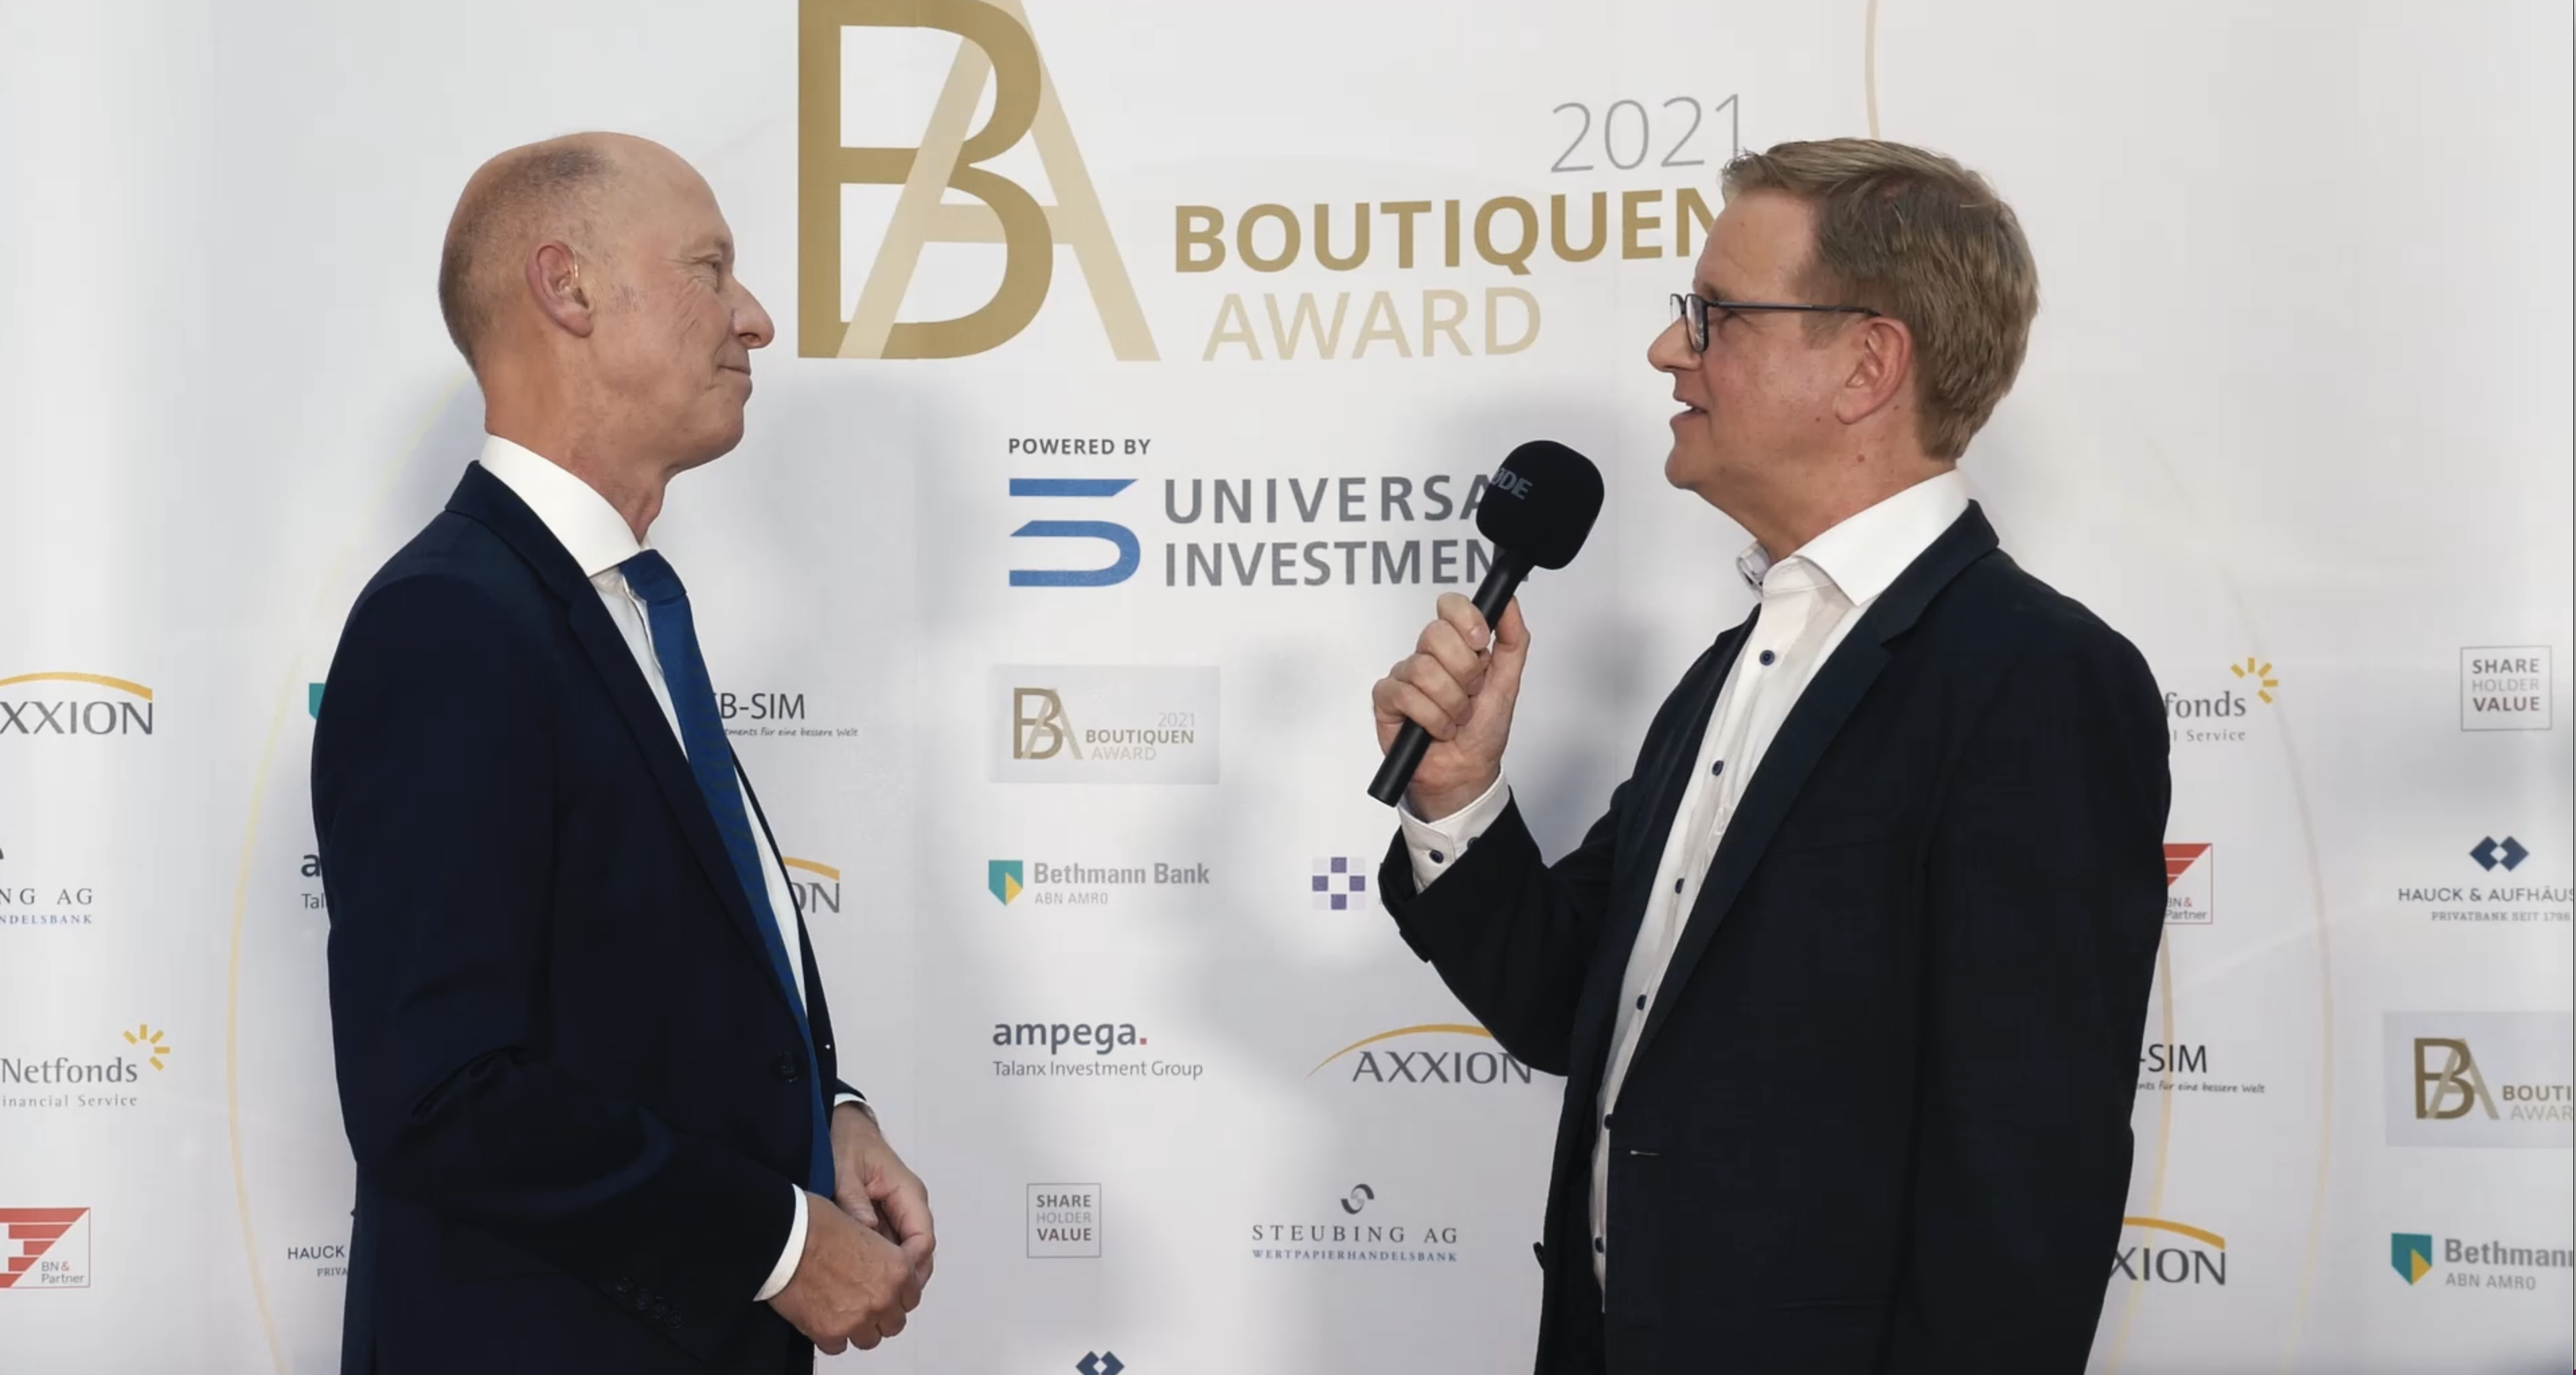 Boutiquen Awards 2021 Winfried Stürzbecher